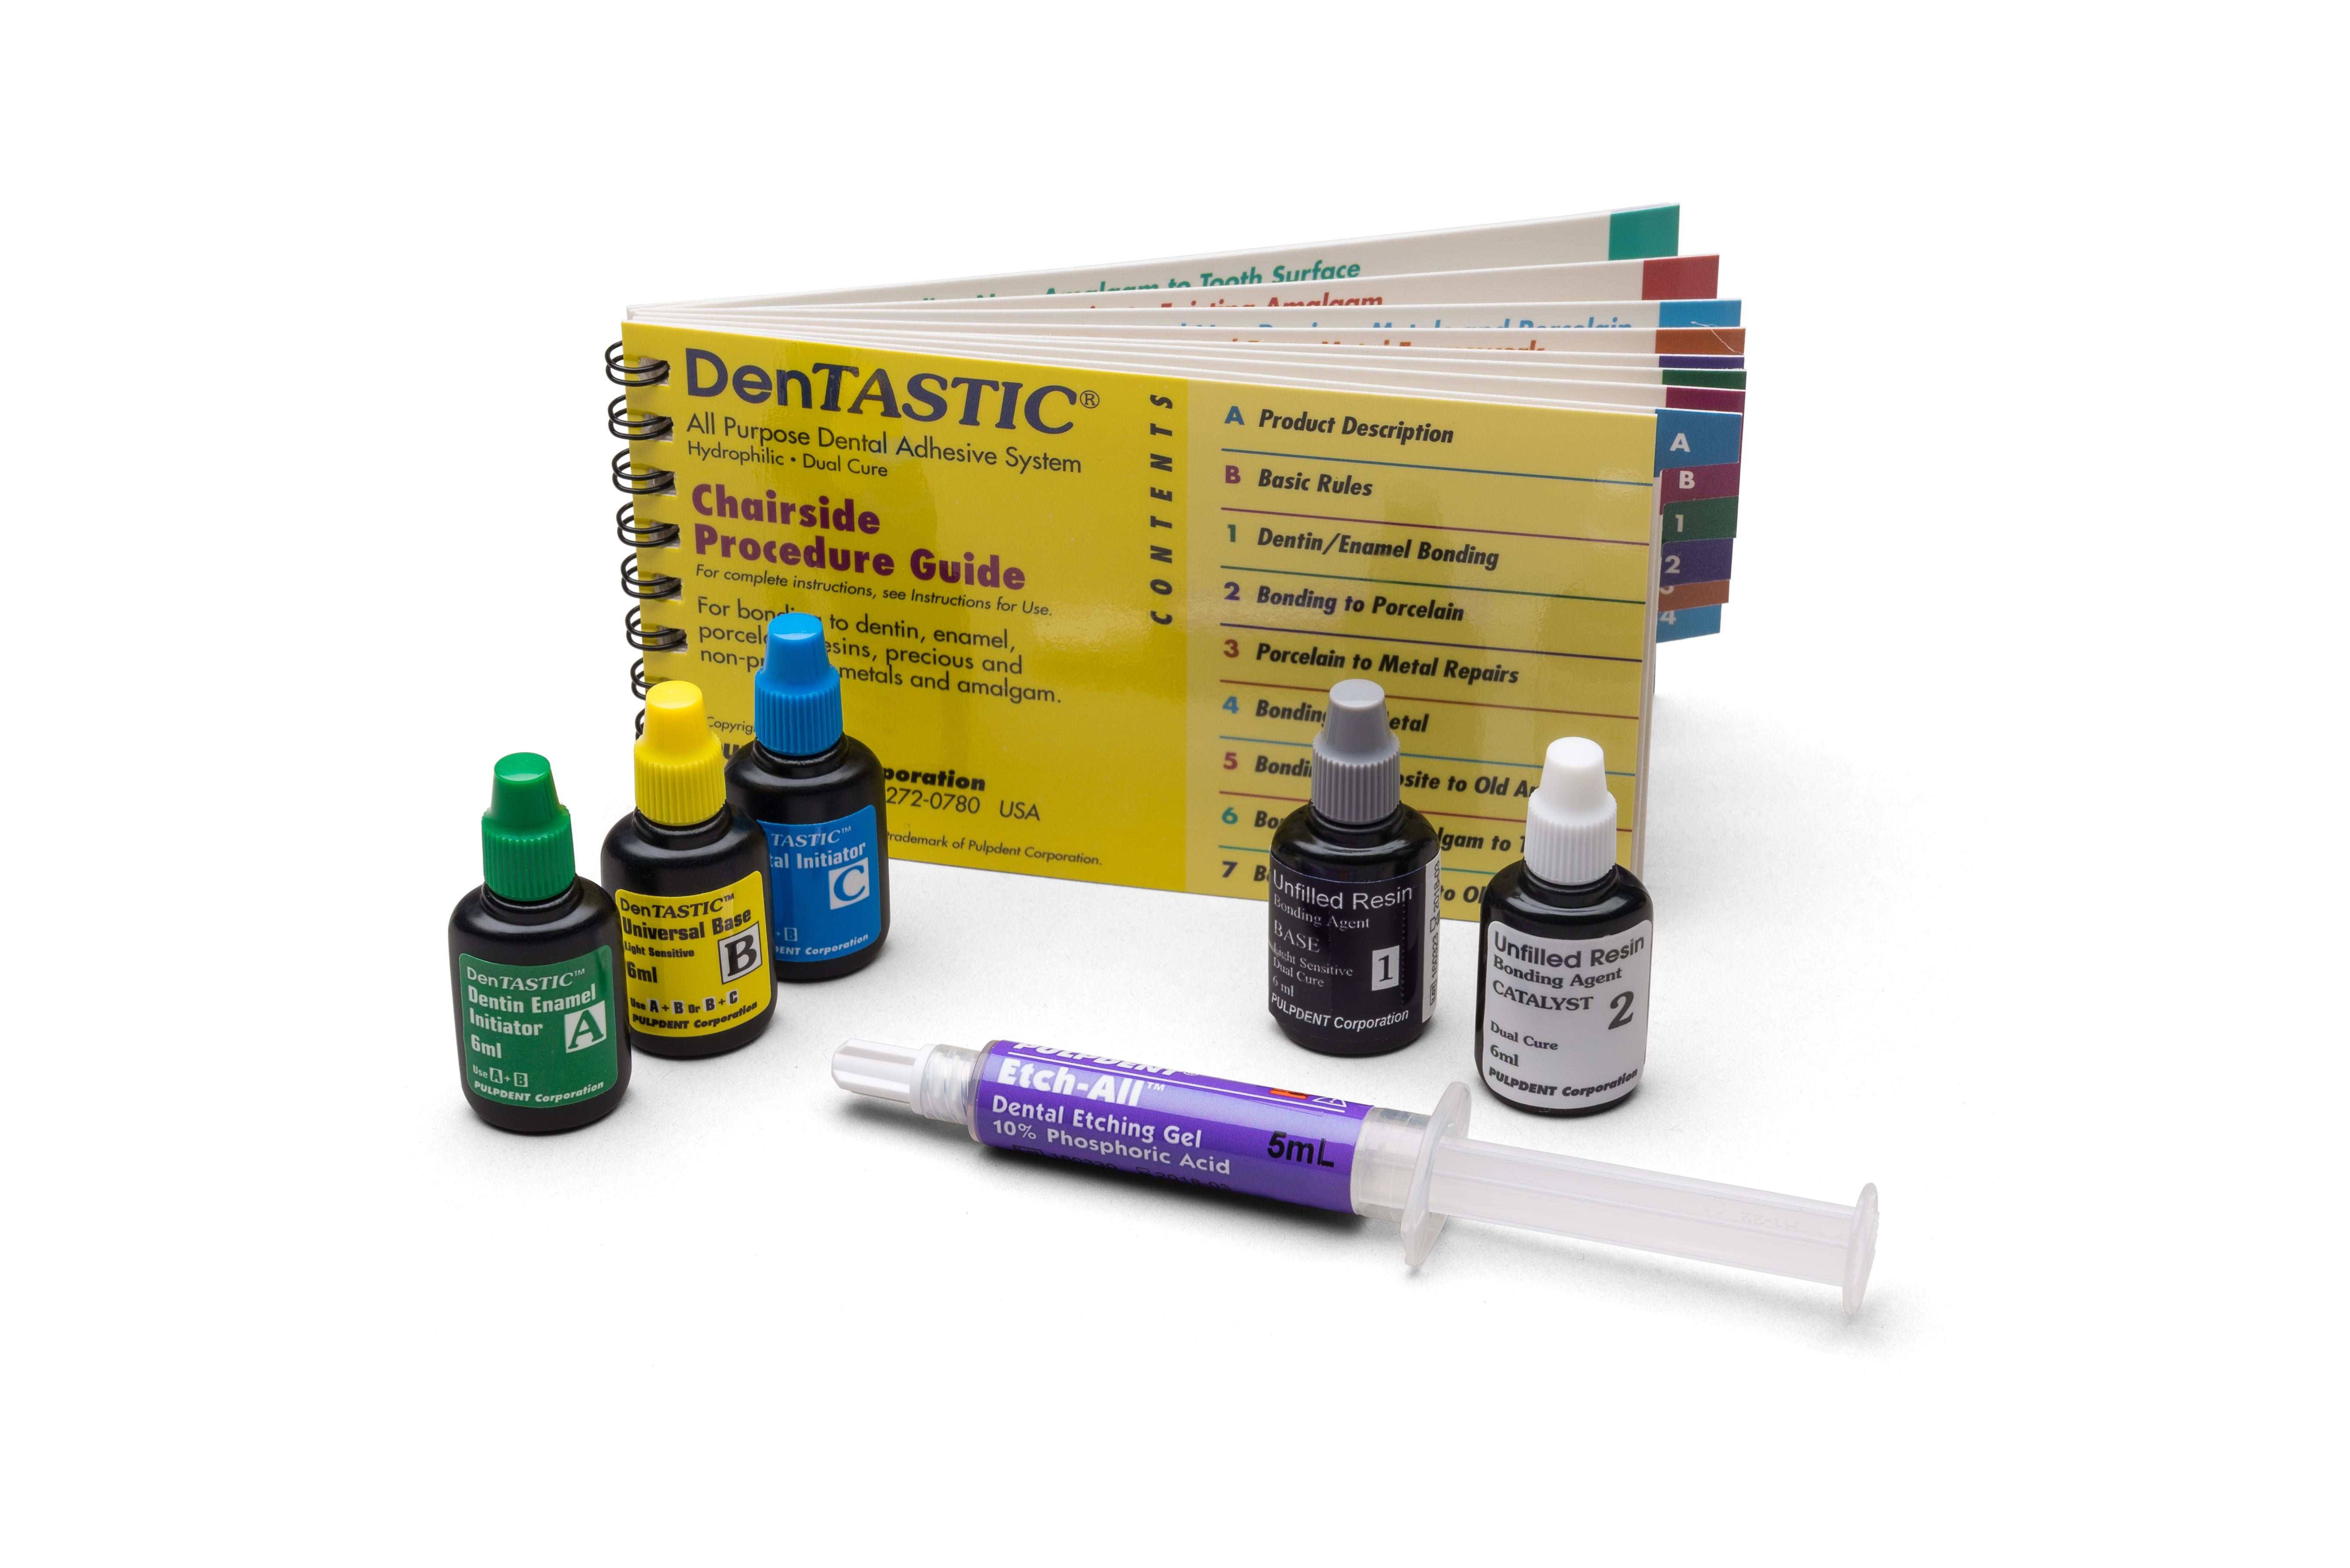 DenTASTIC All-Purpose Dental Adhesive System